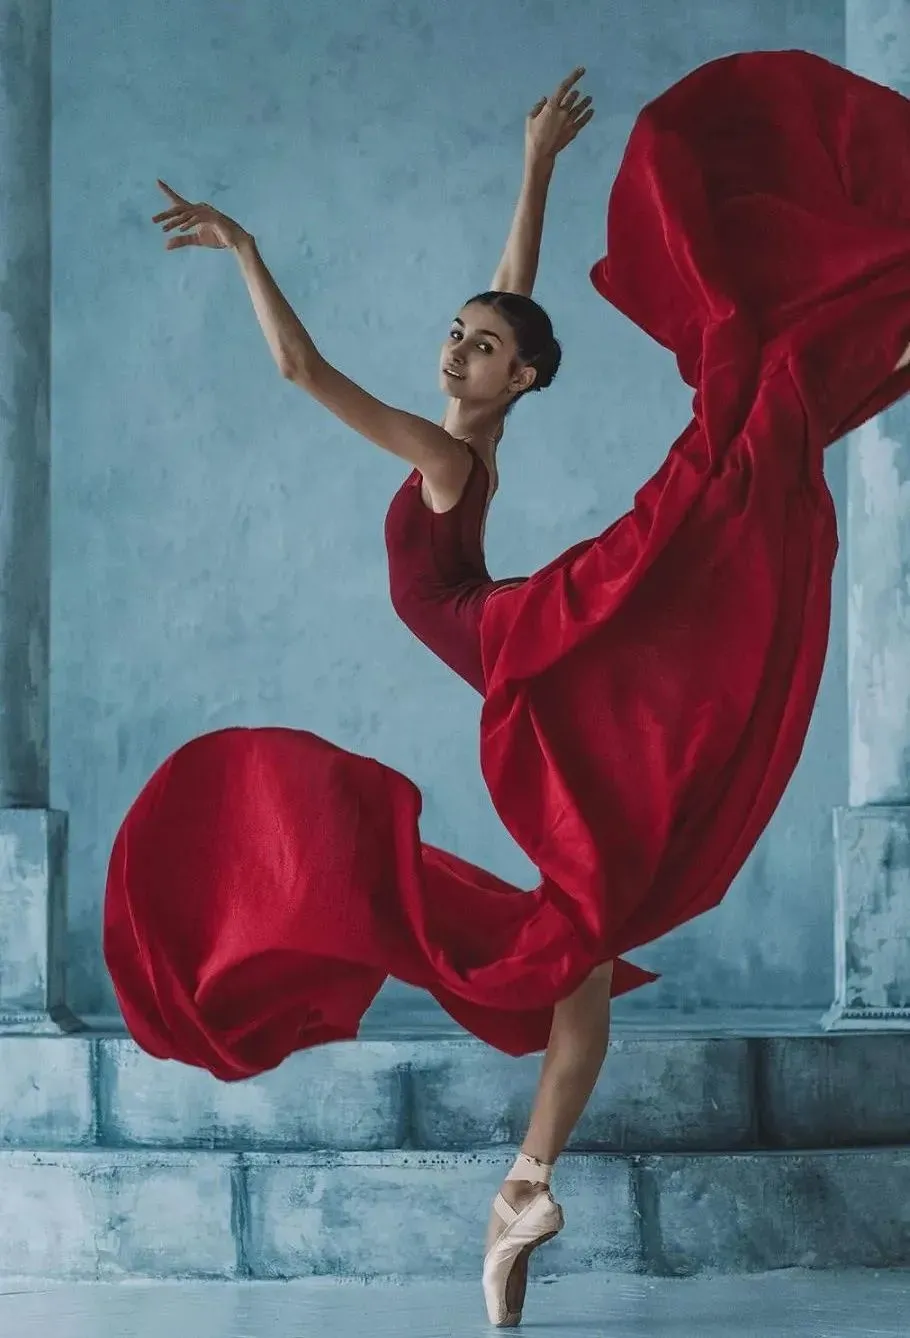 精美图片:人体摄影艺术,舞蹈的灵动之美